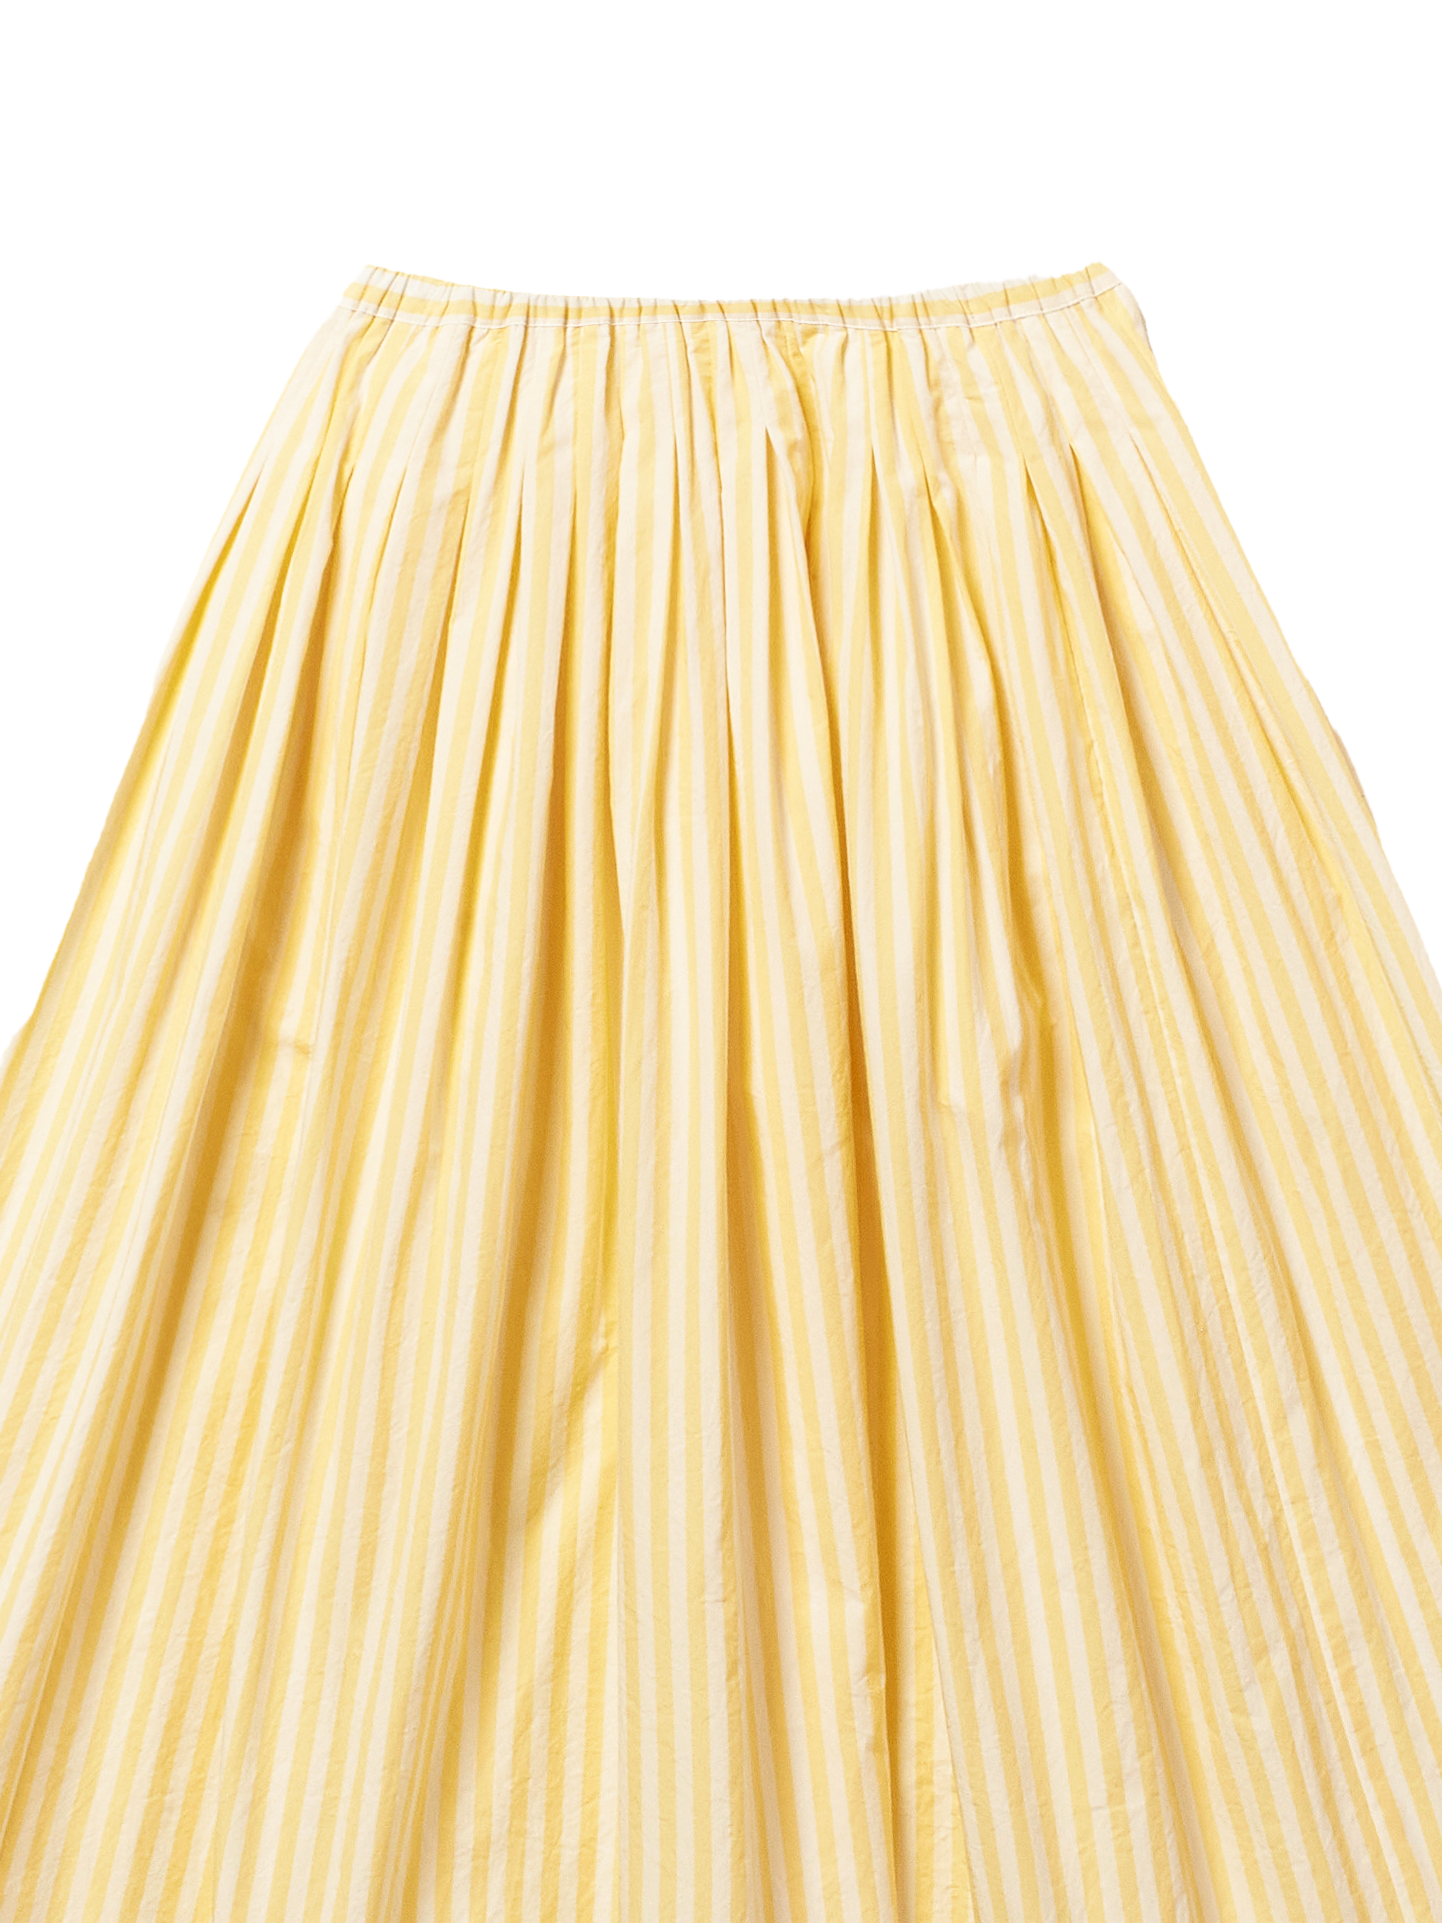 stripe skirt